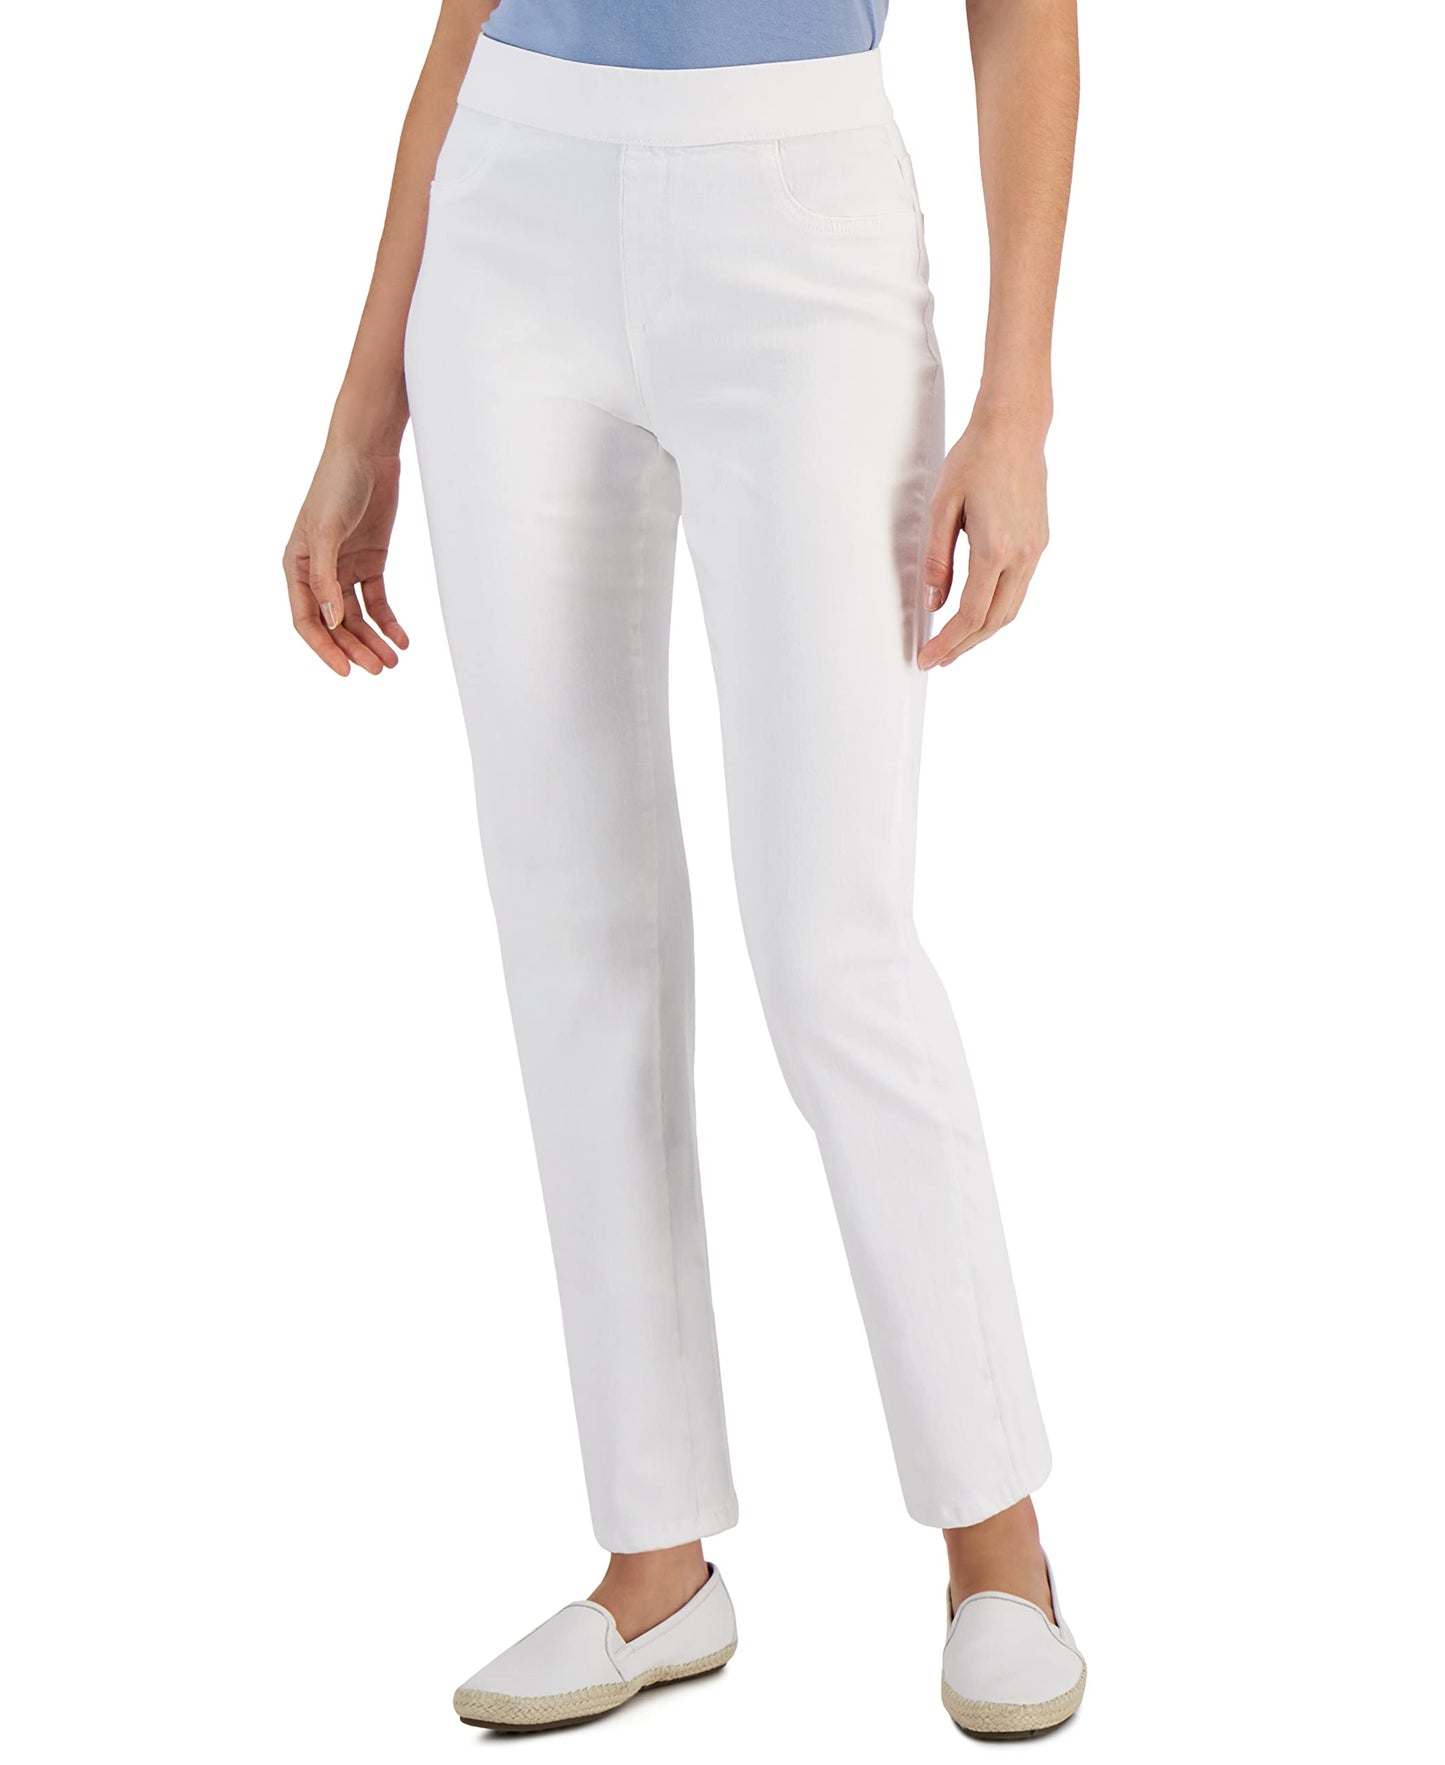 Karen S Women's Pull-On White Denim Pants